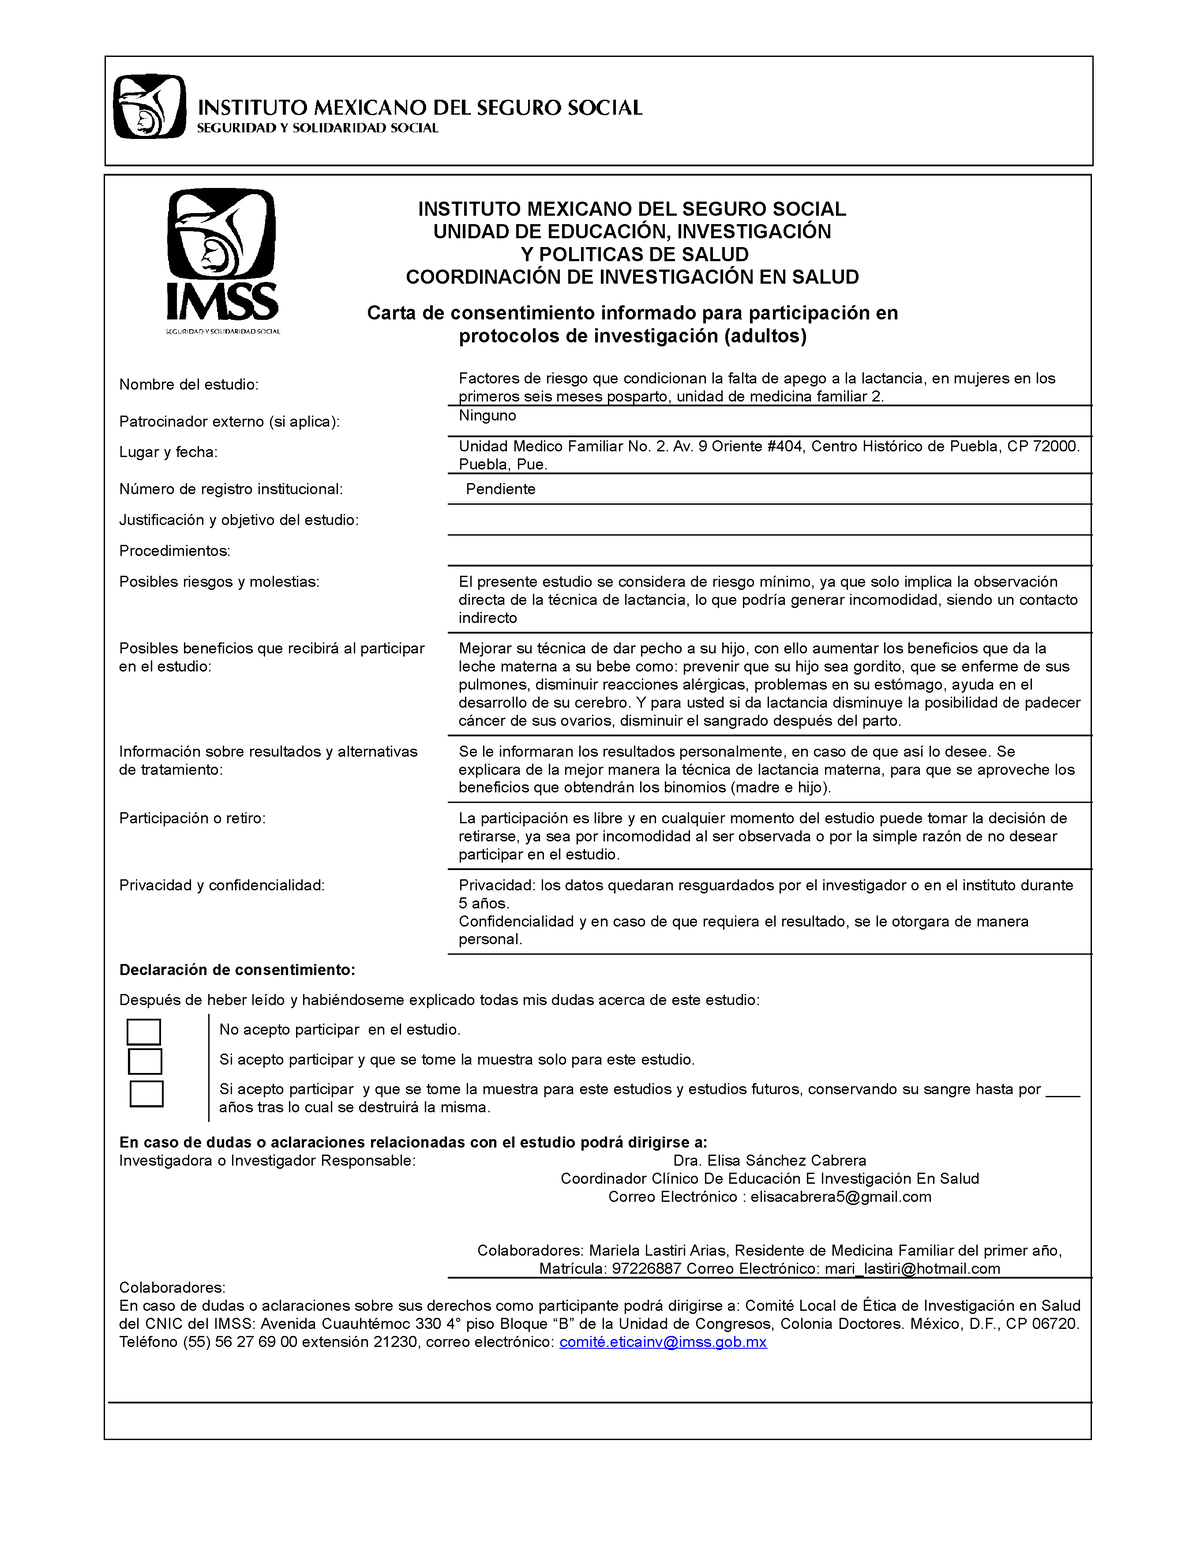 Consentimiento Informado Protocolo Instituto Mexicano Del Seguro Social Unidad De EducaciÓn 2431